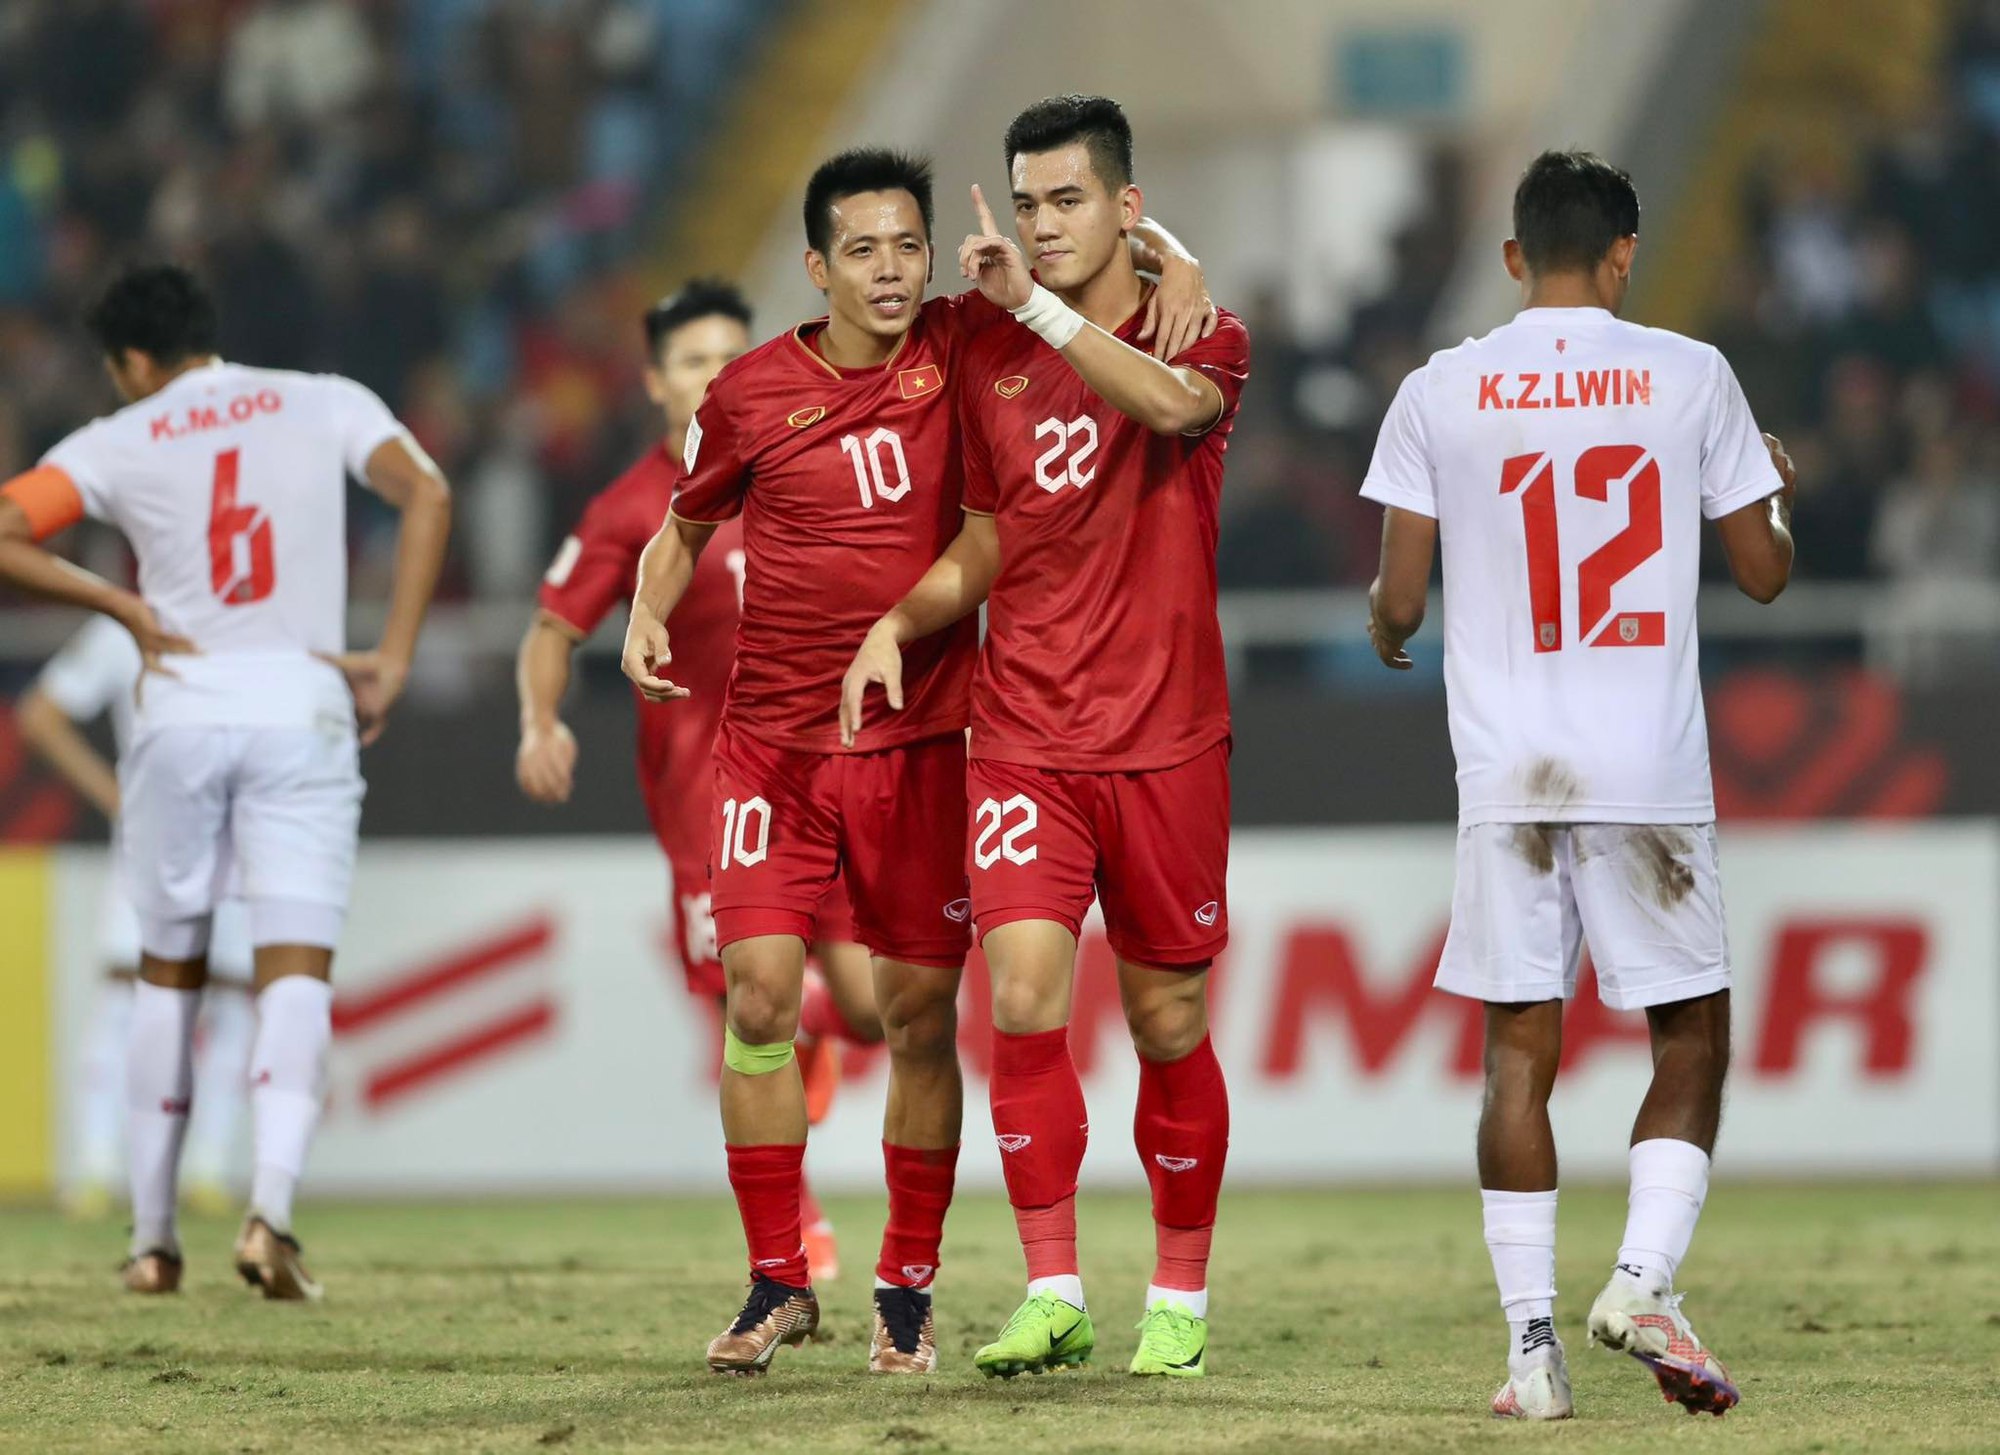 Tiến Linh hé lộ về tình hình chấn thương trước trận bán kết gặp Indonesia - Ảnh 1.